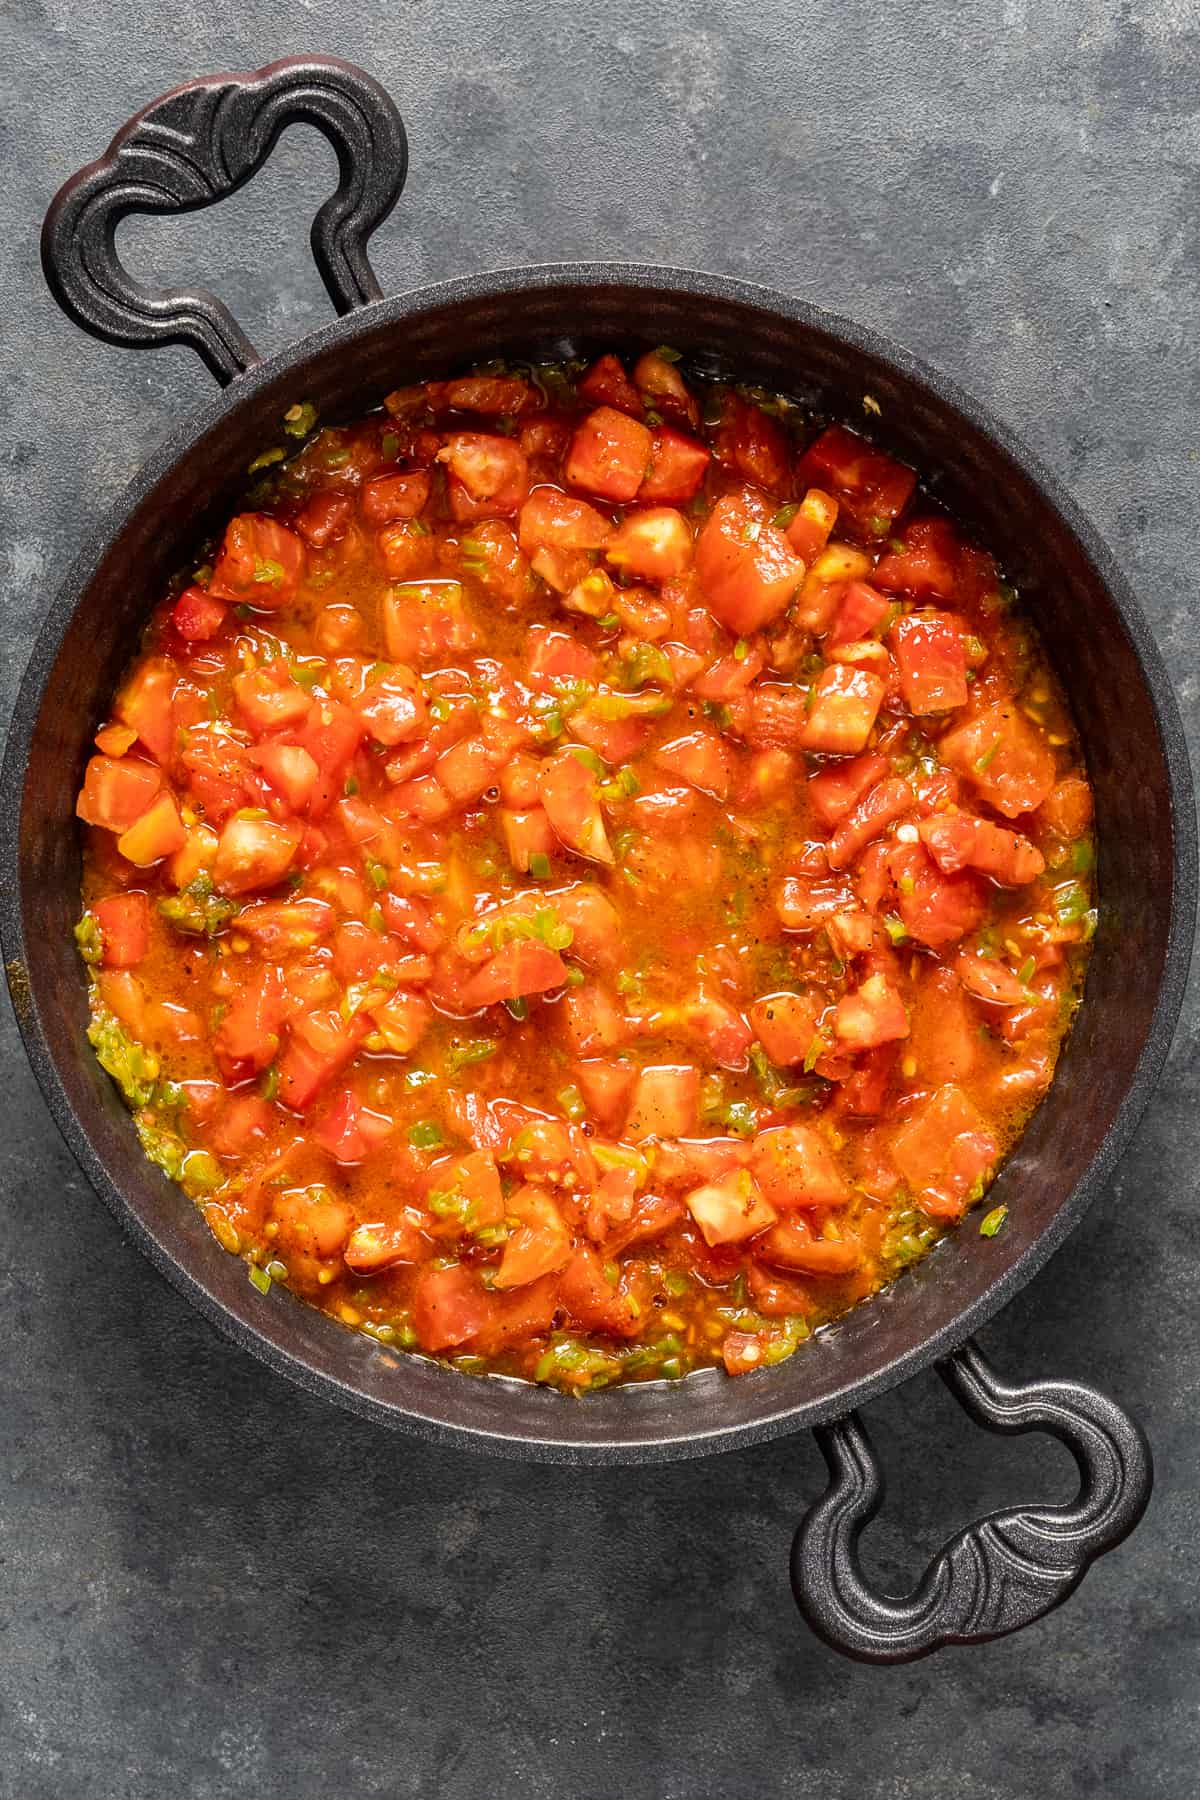 切成丁的西红柿和青椒在锅里煮